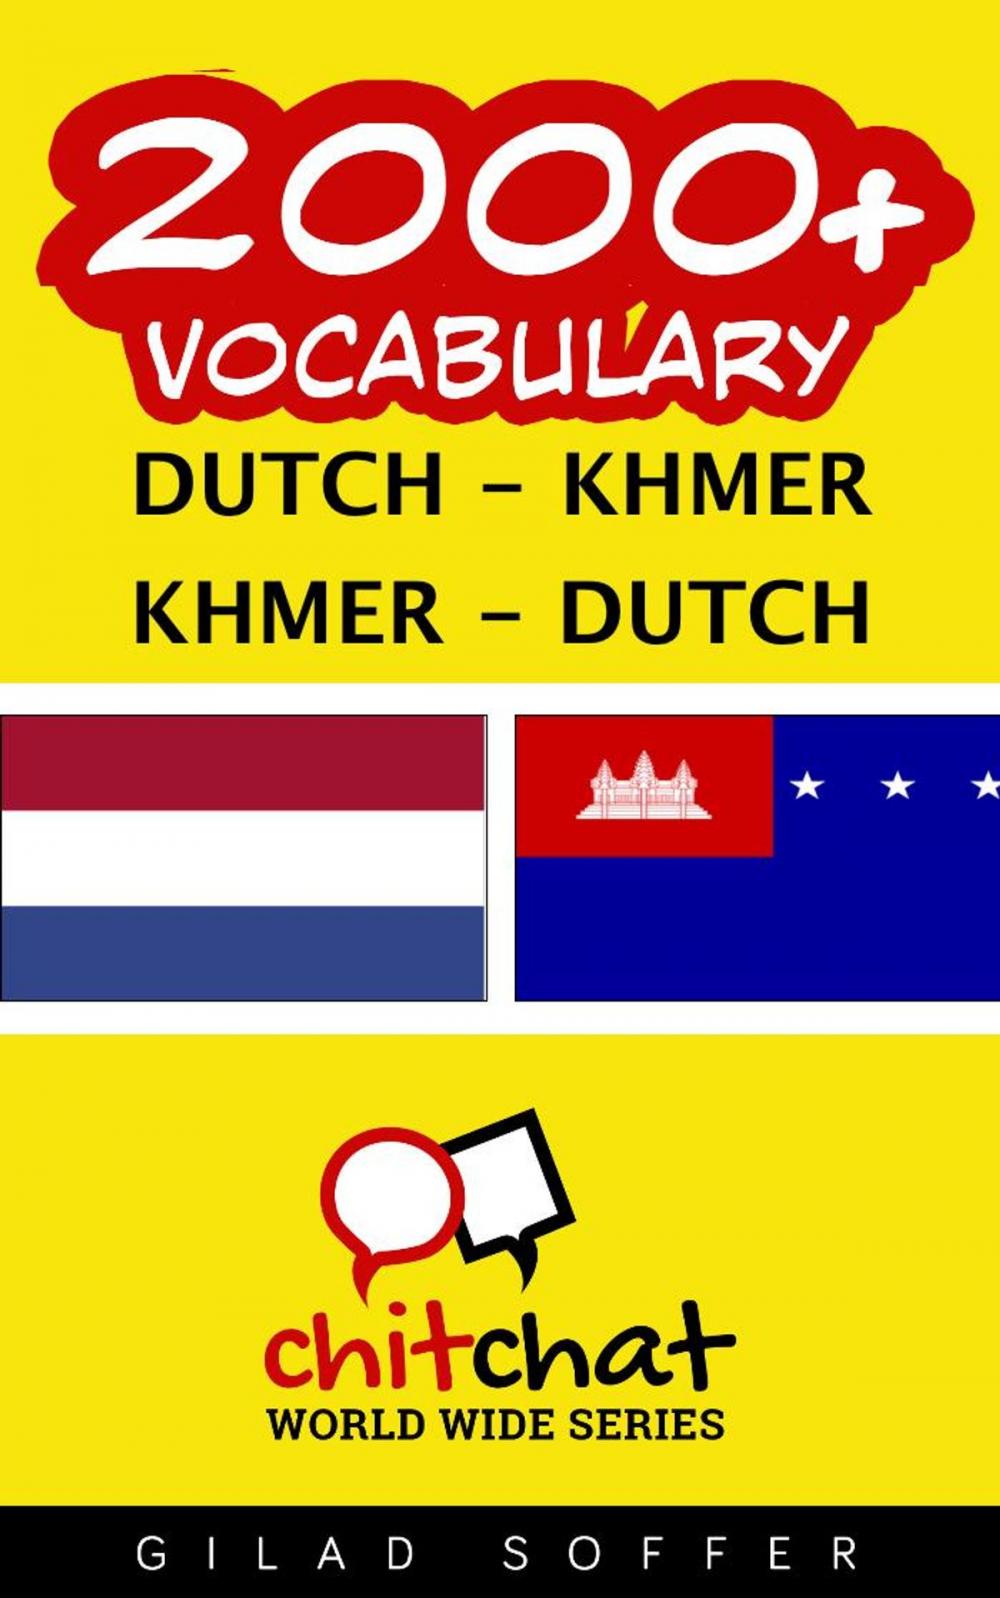 Big bigCover of 2000+ Vocabulary Dutch - Khmer